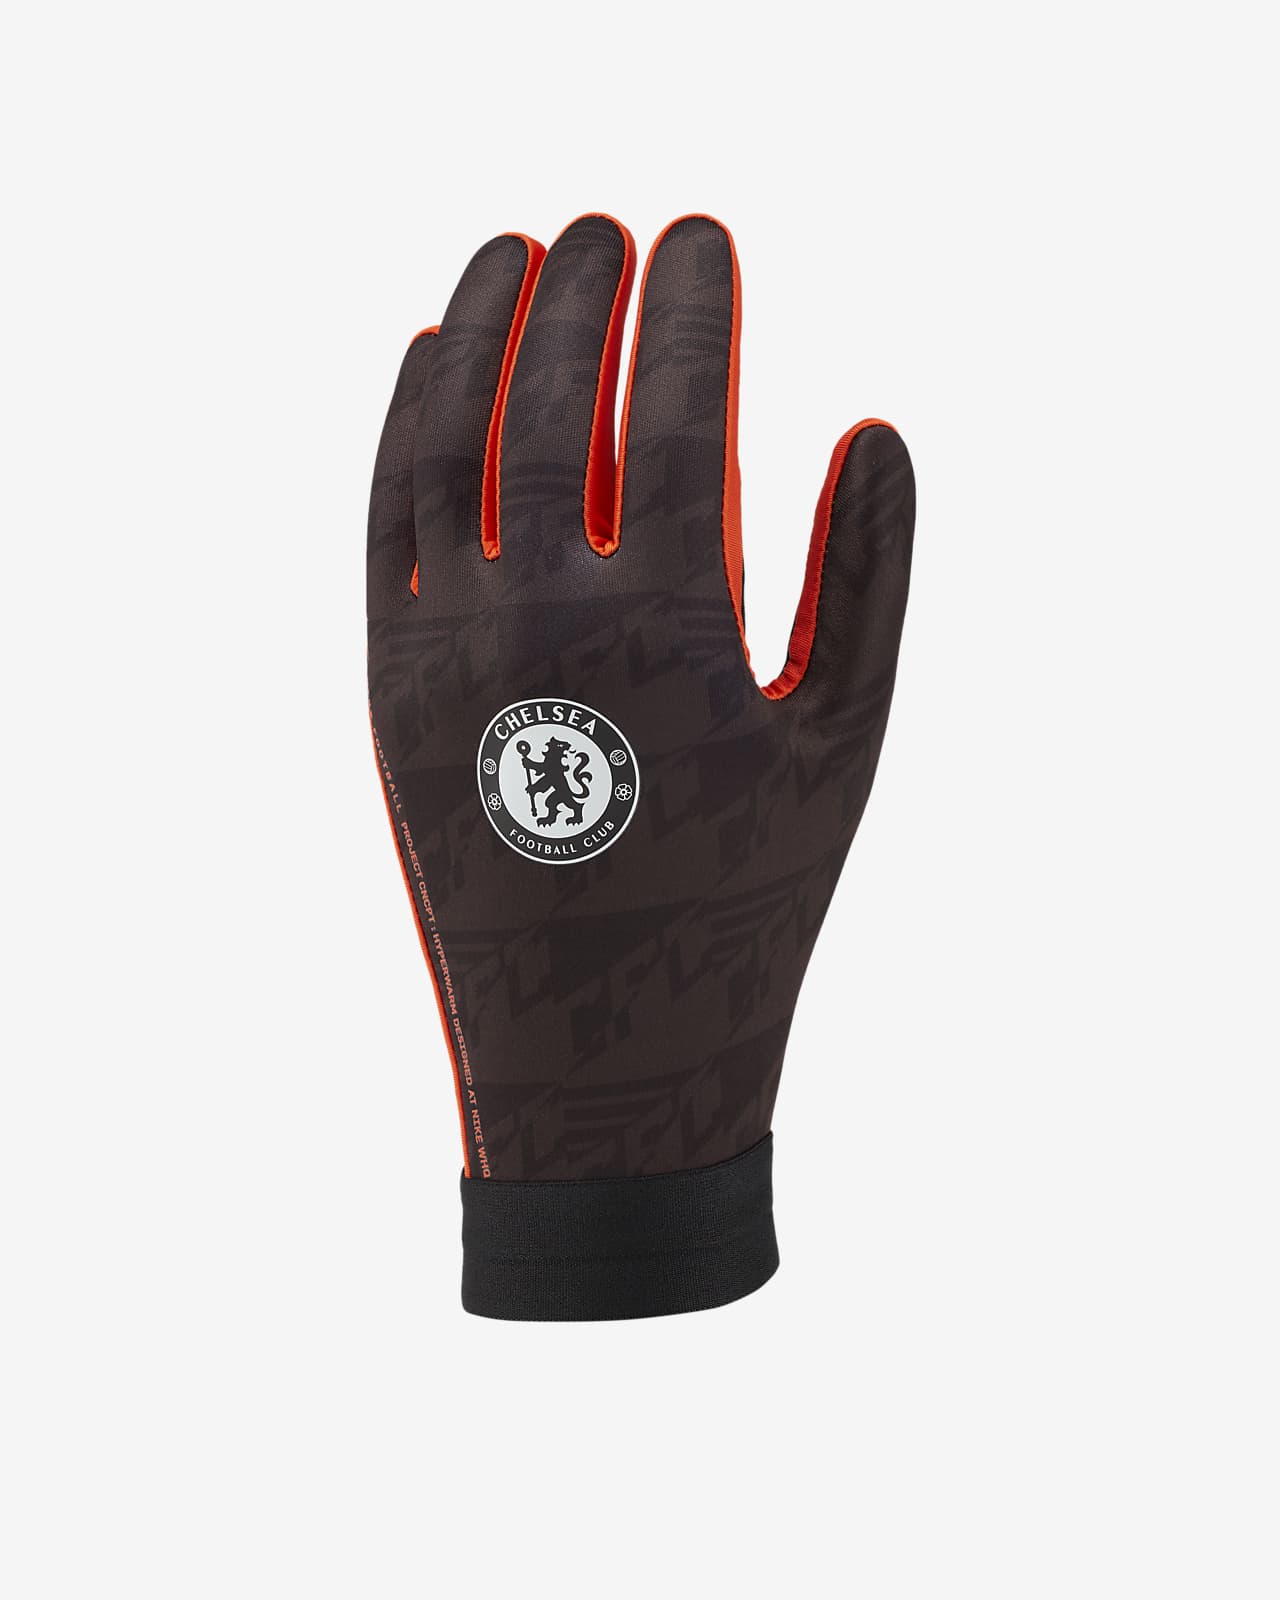 Chelsea FC HyperWarm Academy Football Gloves